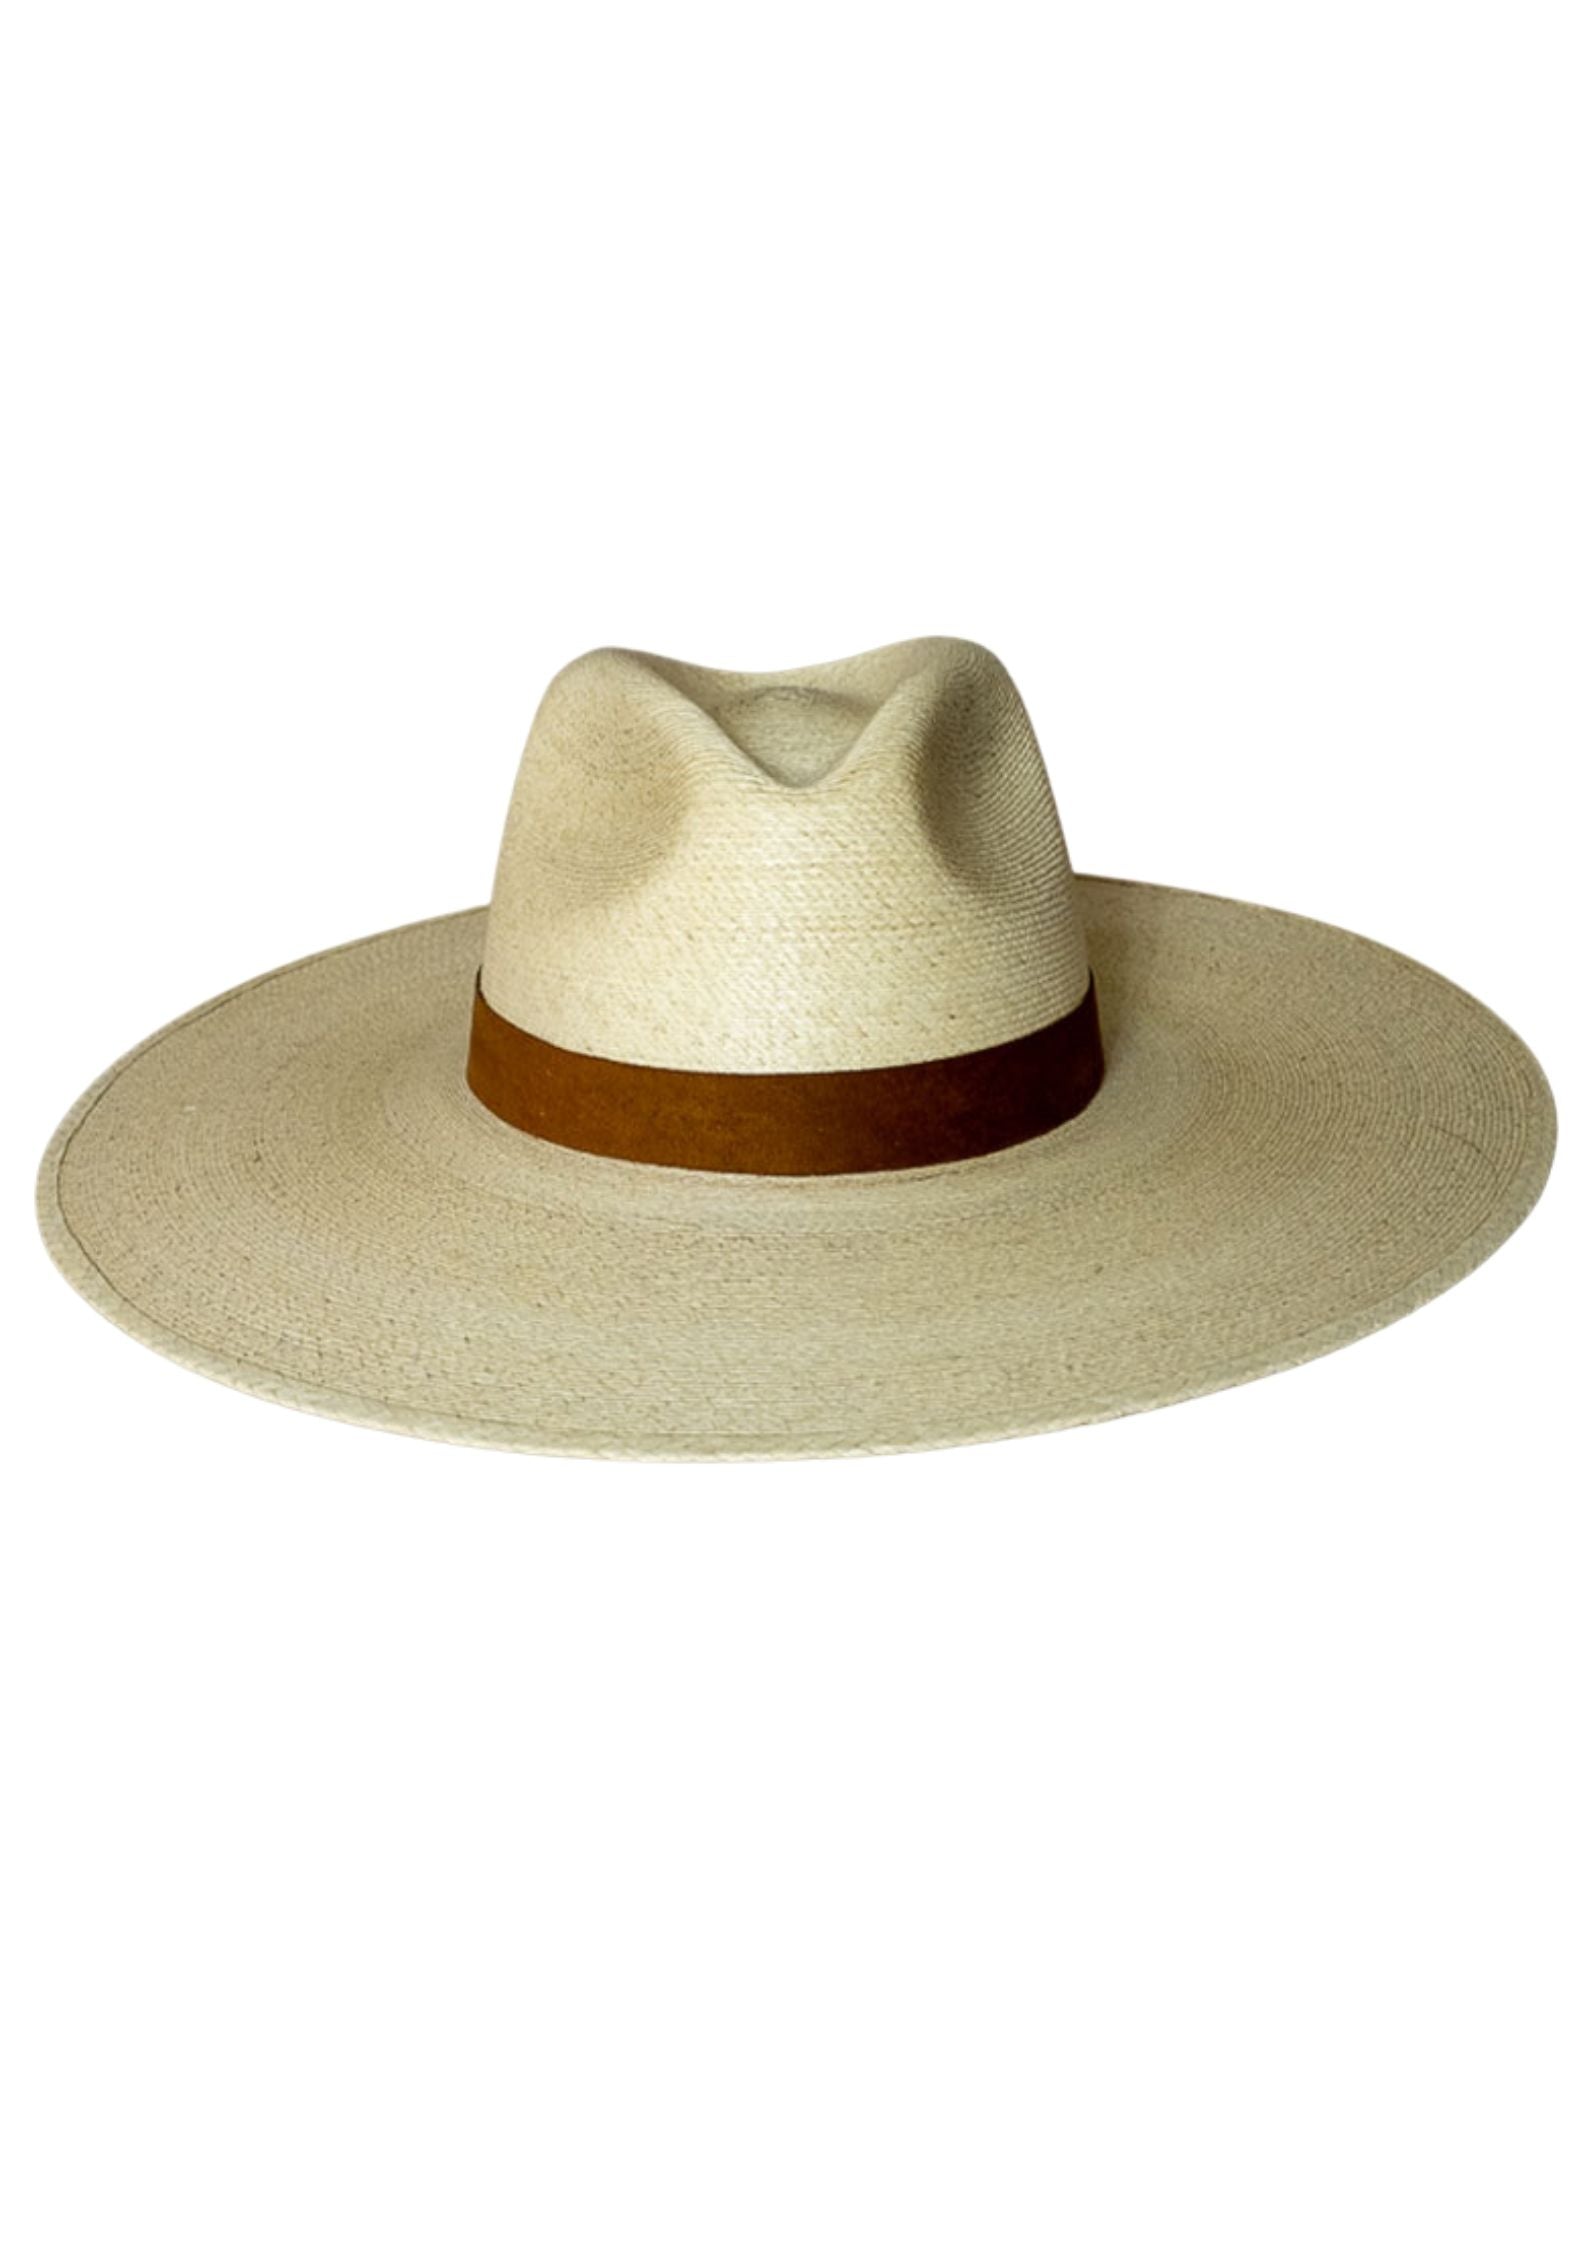 chapeau de paille été pour femme Bahia Natural sur fond blanc